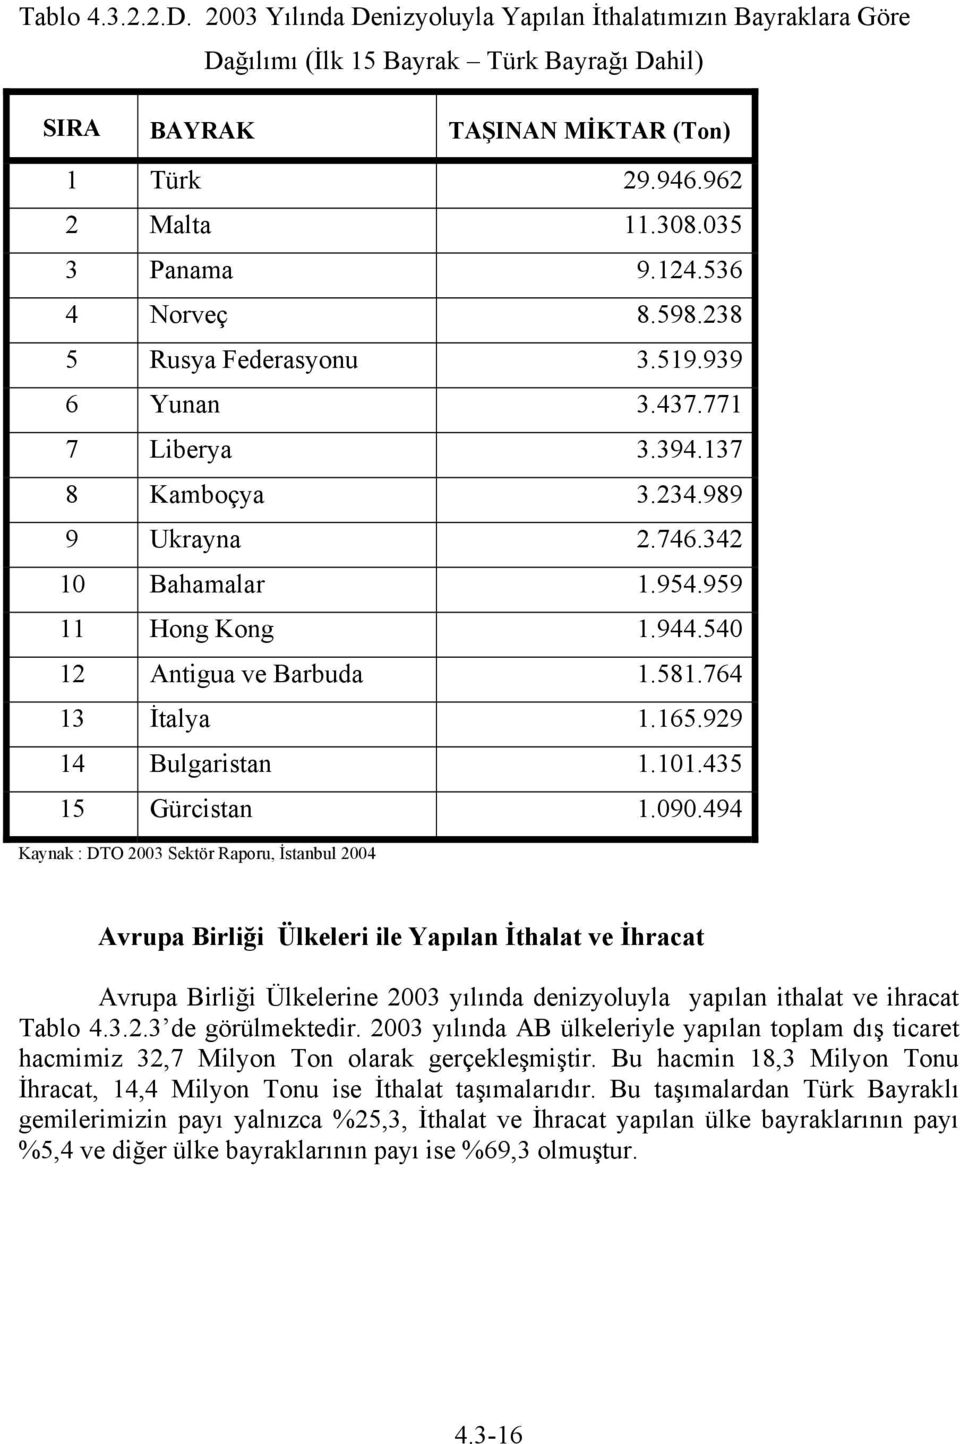 540 12 Antigua ve Barbuda 1.581.764 13 İtalya 1.165.929 14 Bulgaristan 1.101.435 15 Gürcistan 1.090.